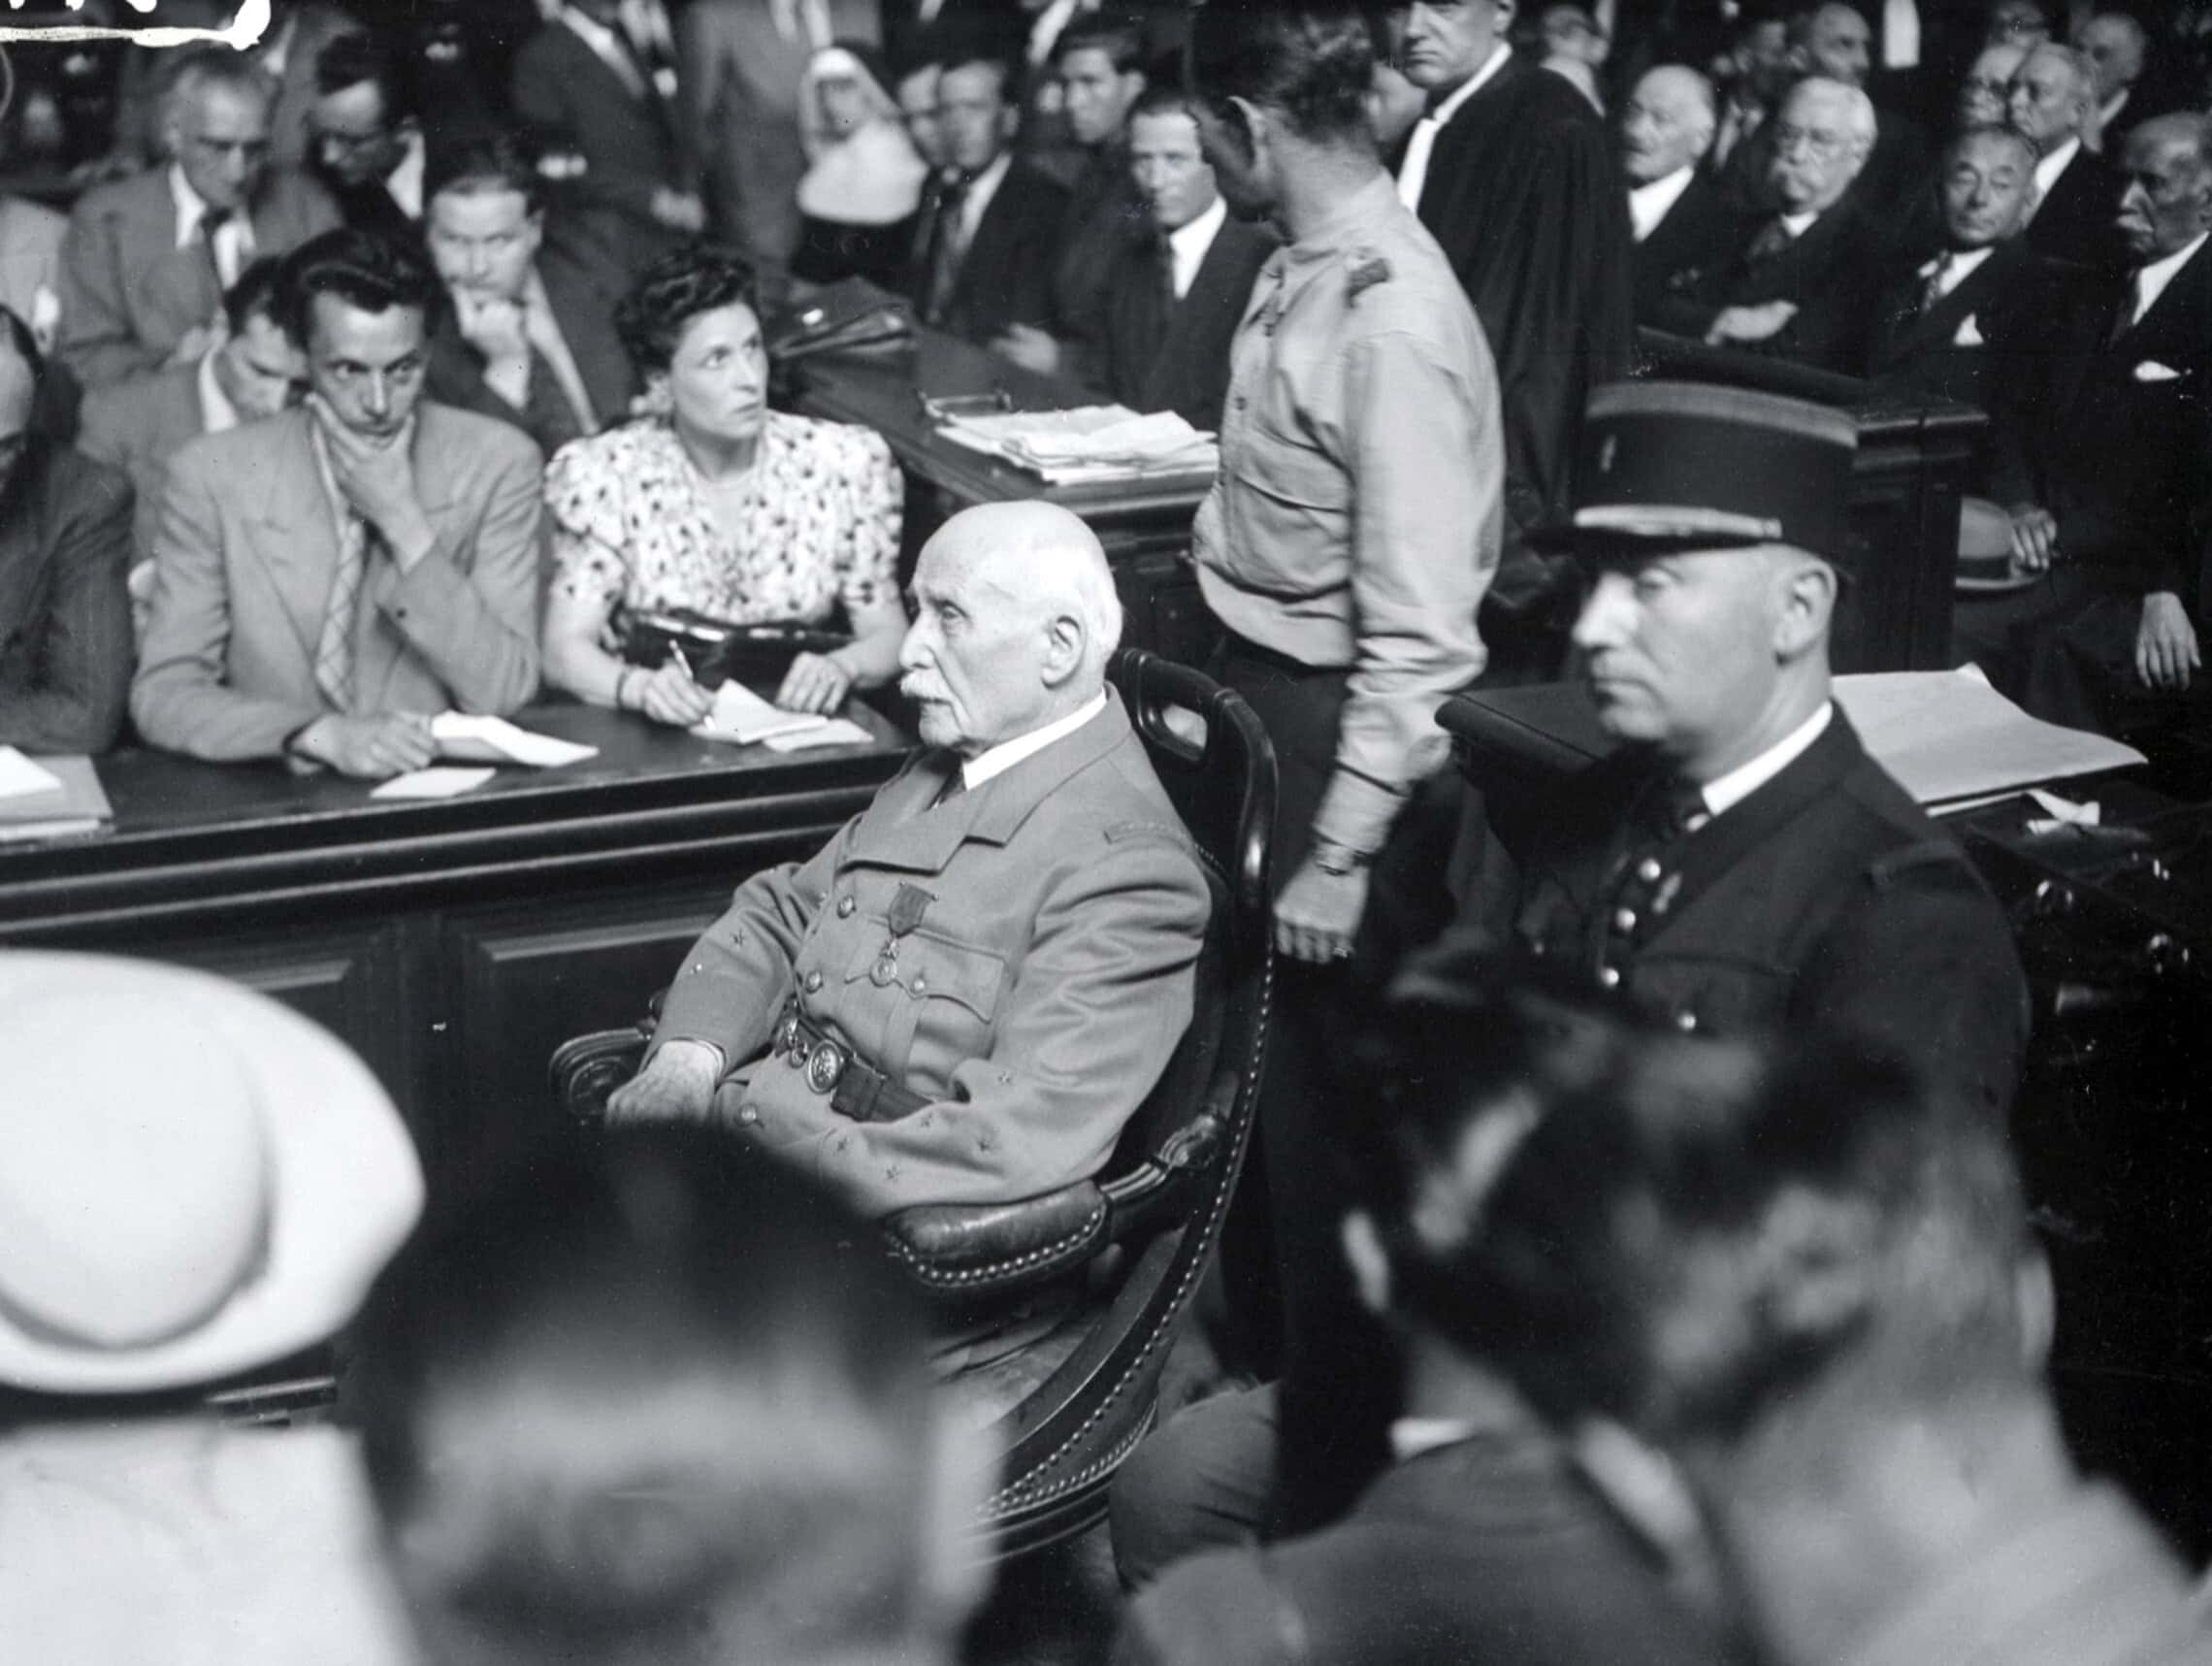 ראש משטר וישי, מרשל פיליפ פטן, יושב במשפטו ביולי 1945 בפריז (צילום: PIGISTE / AFP)